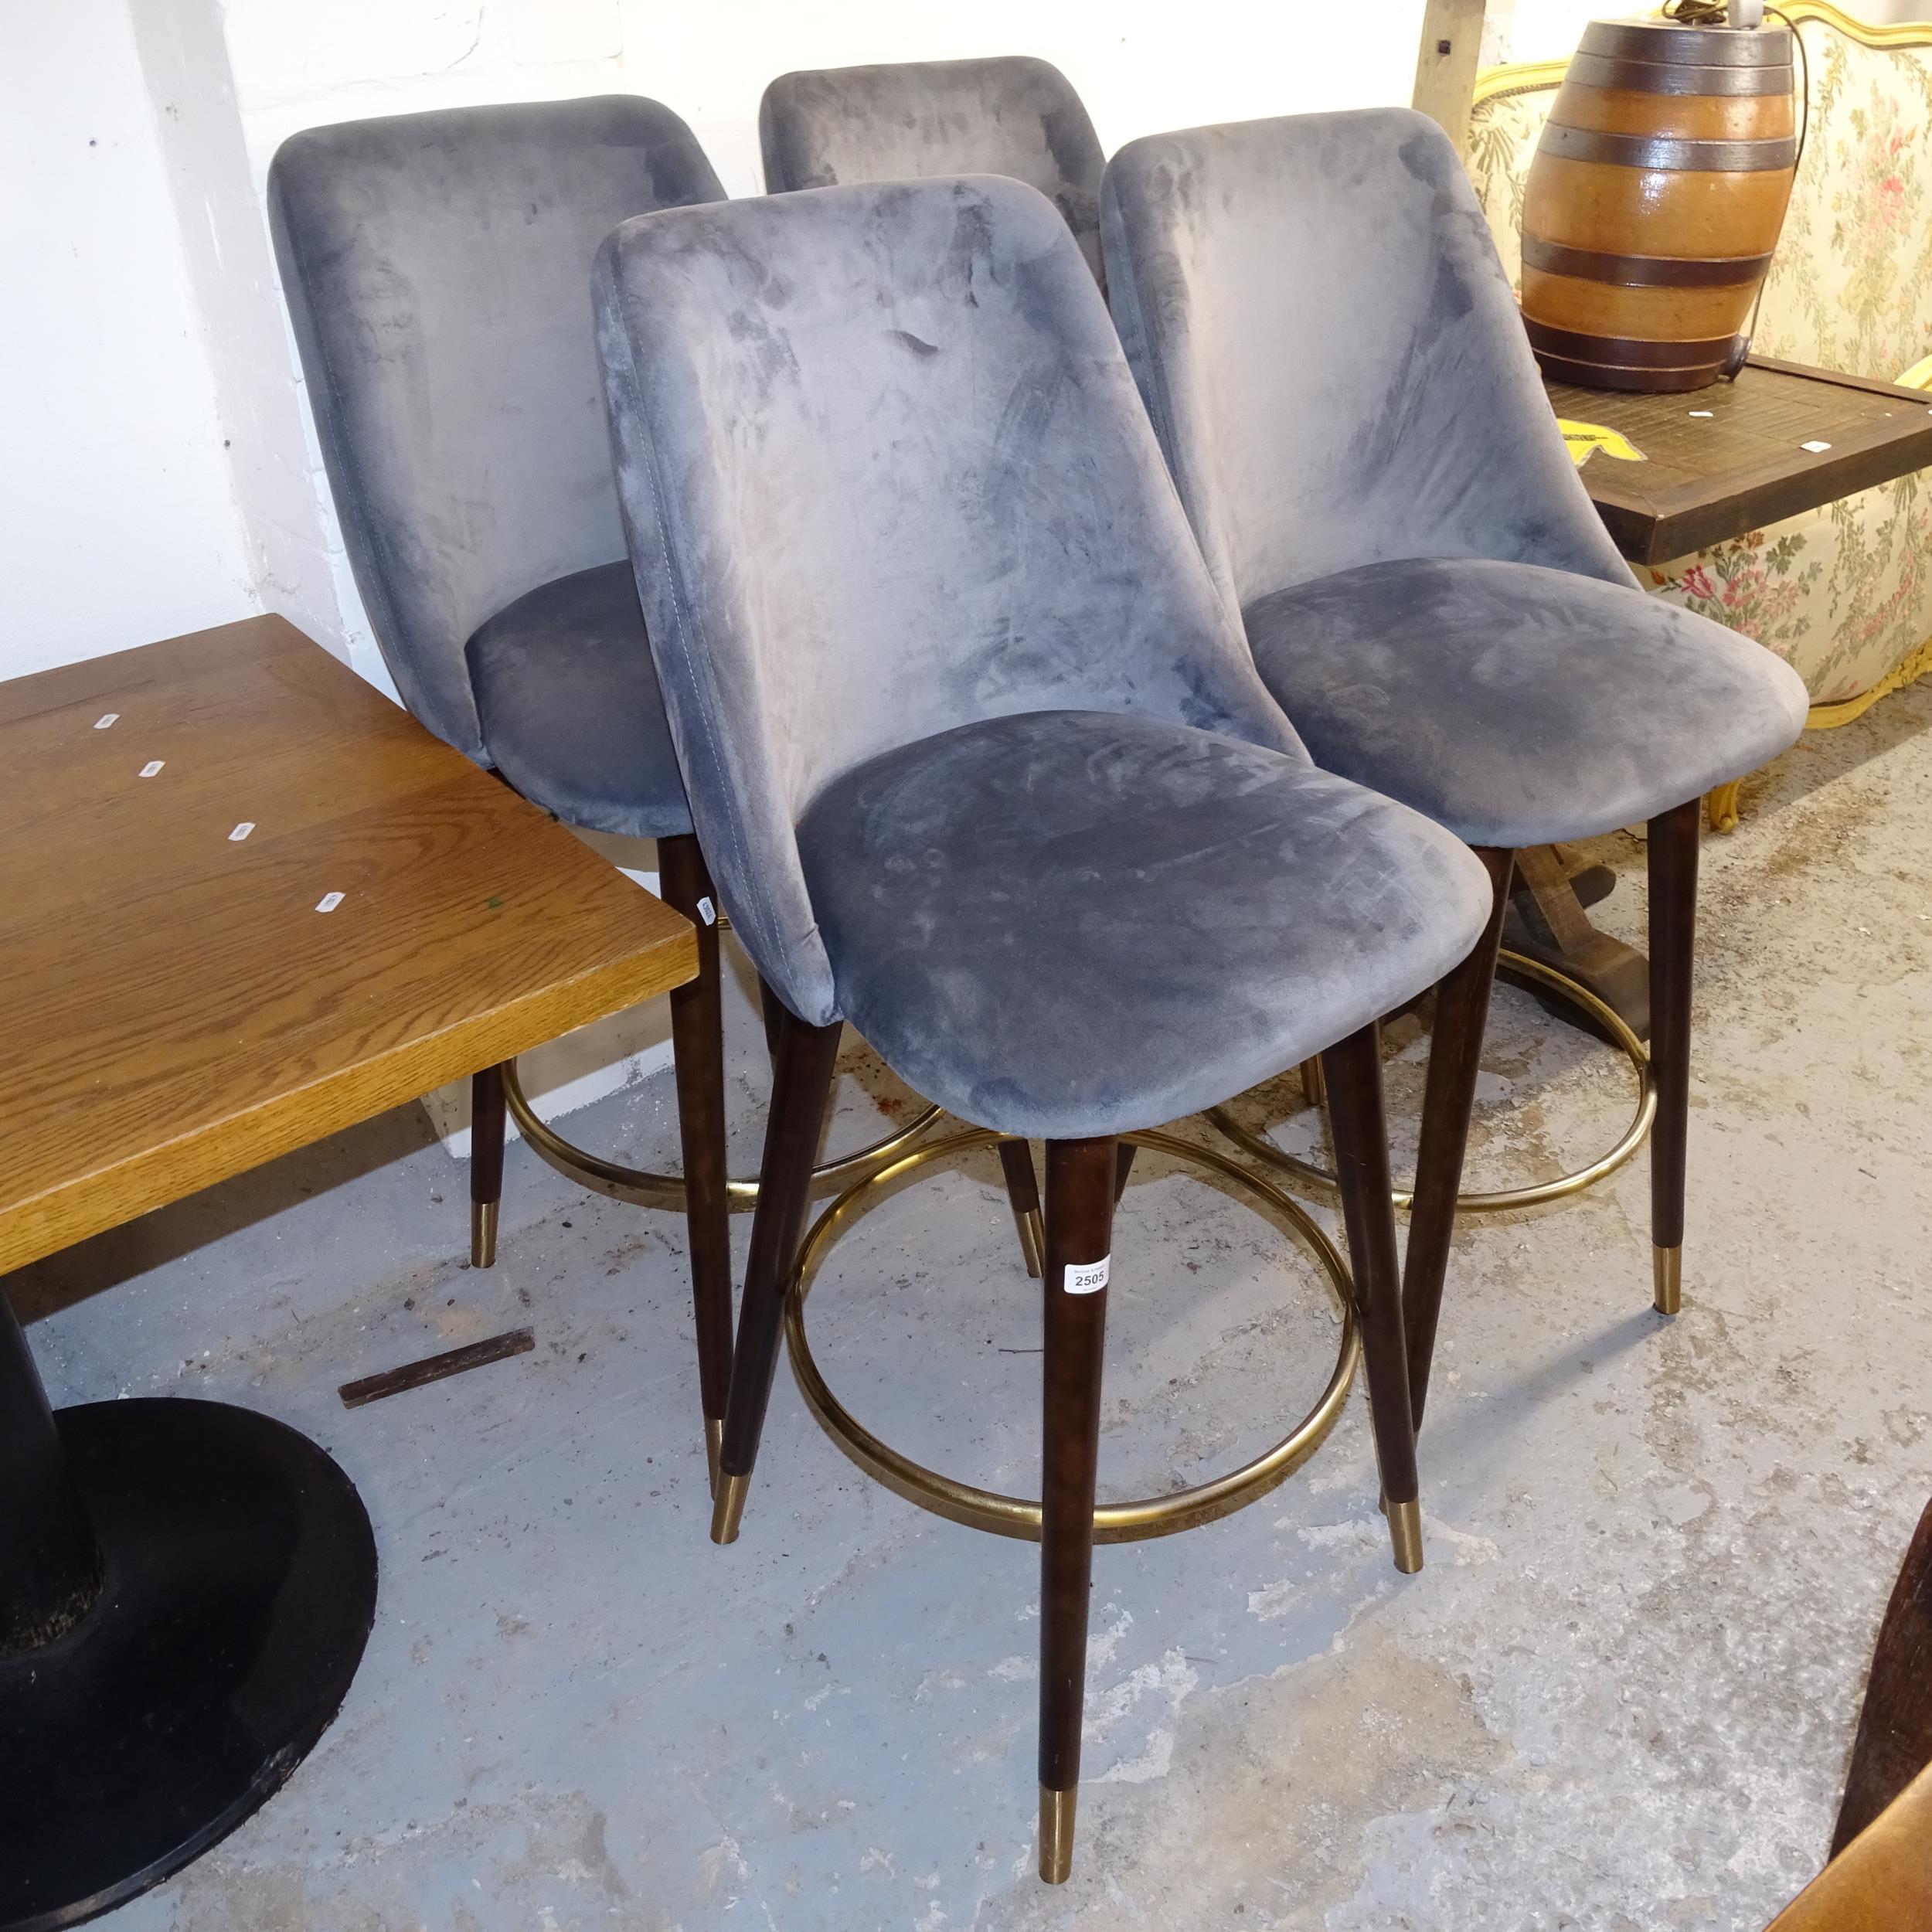 A set of 4 upholstered high-back bar stools, H120cm